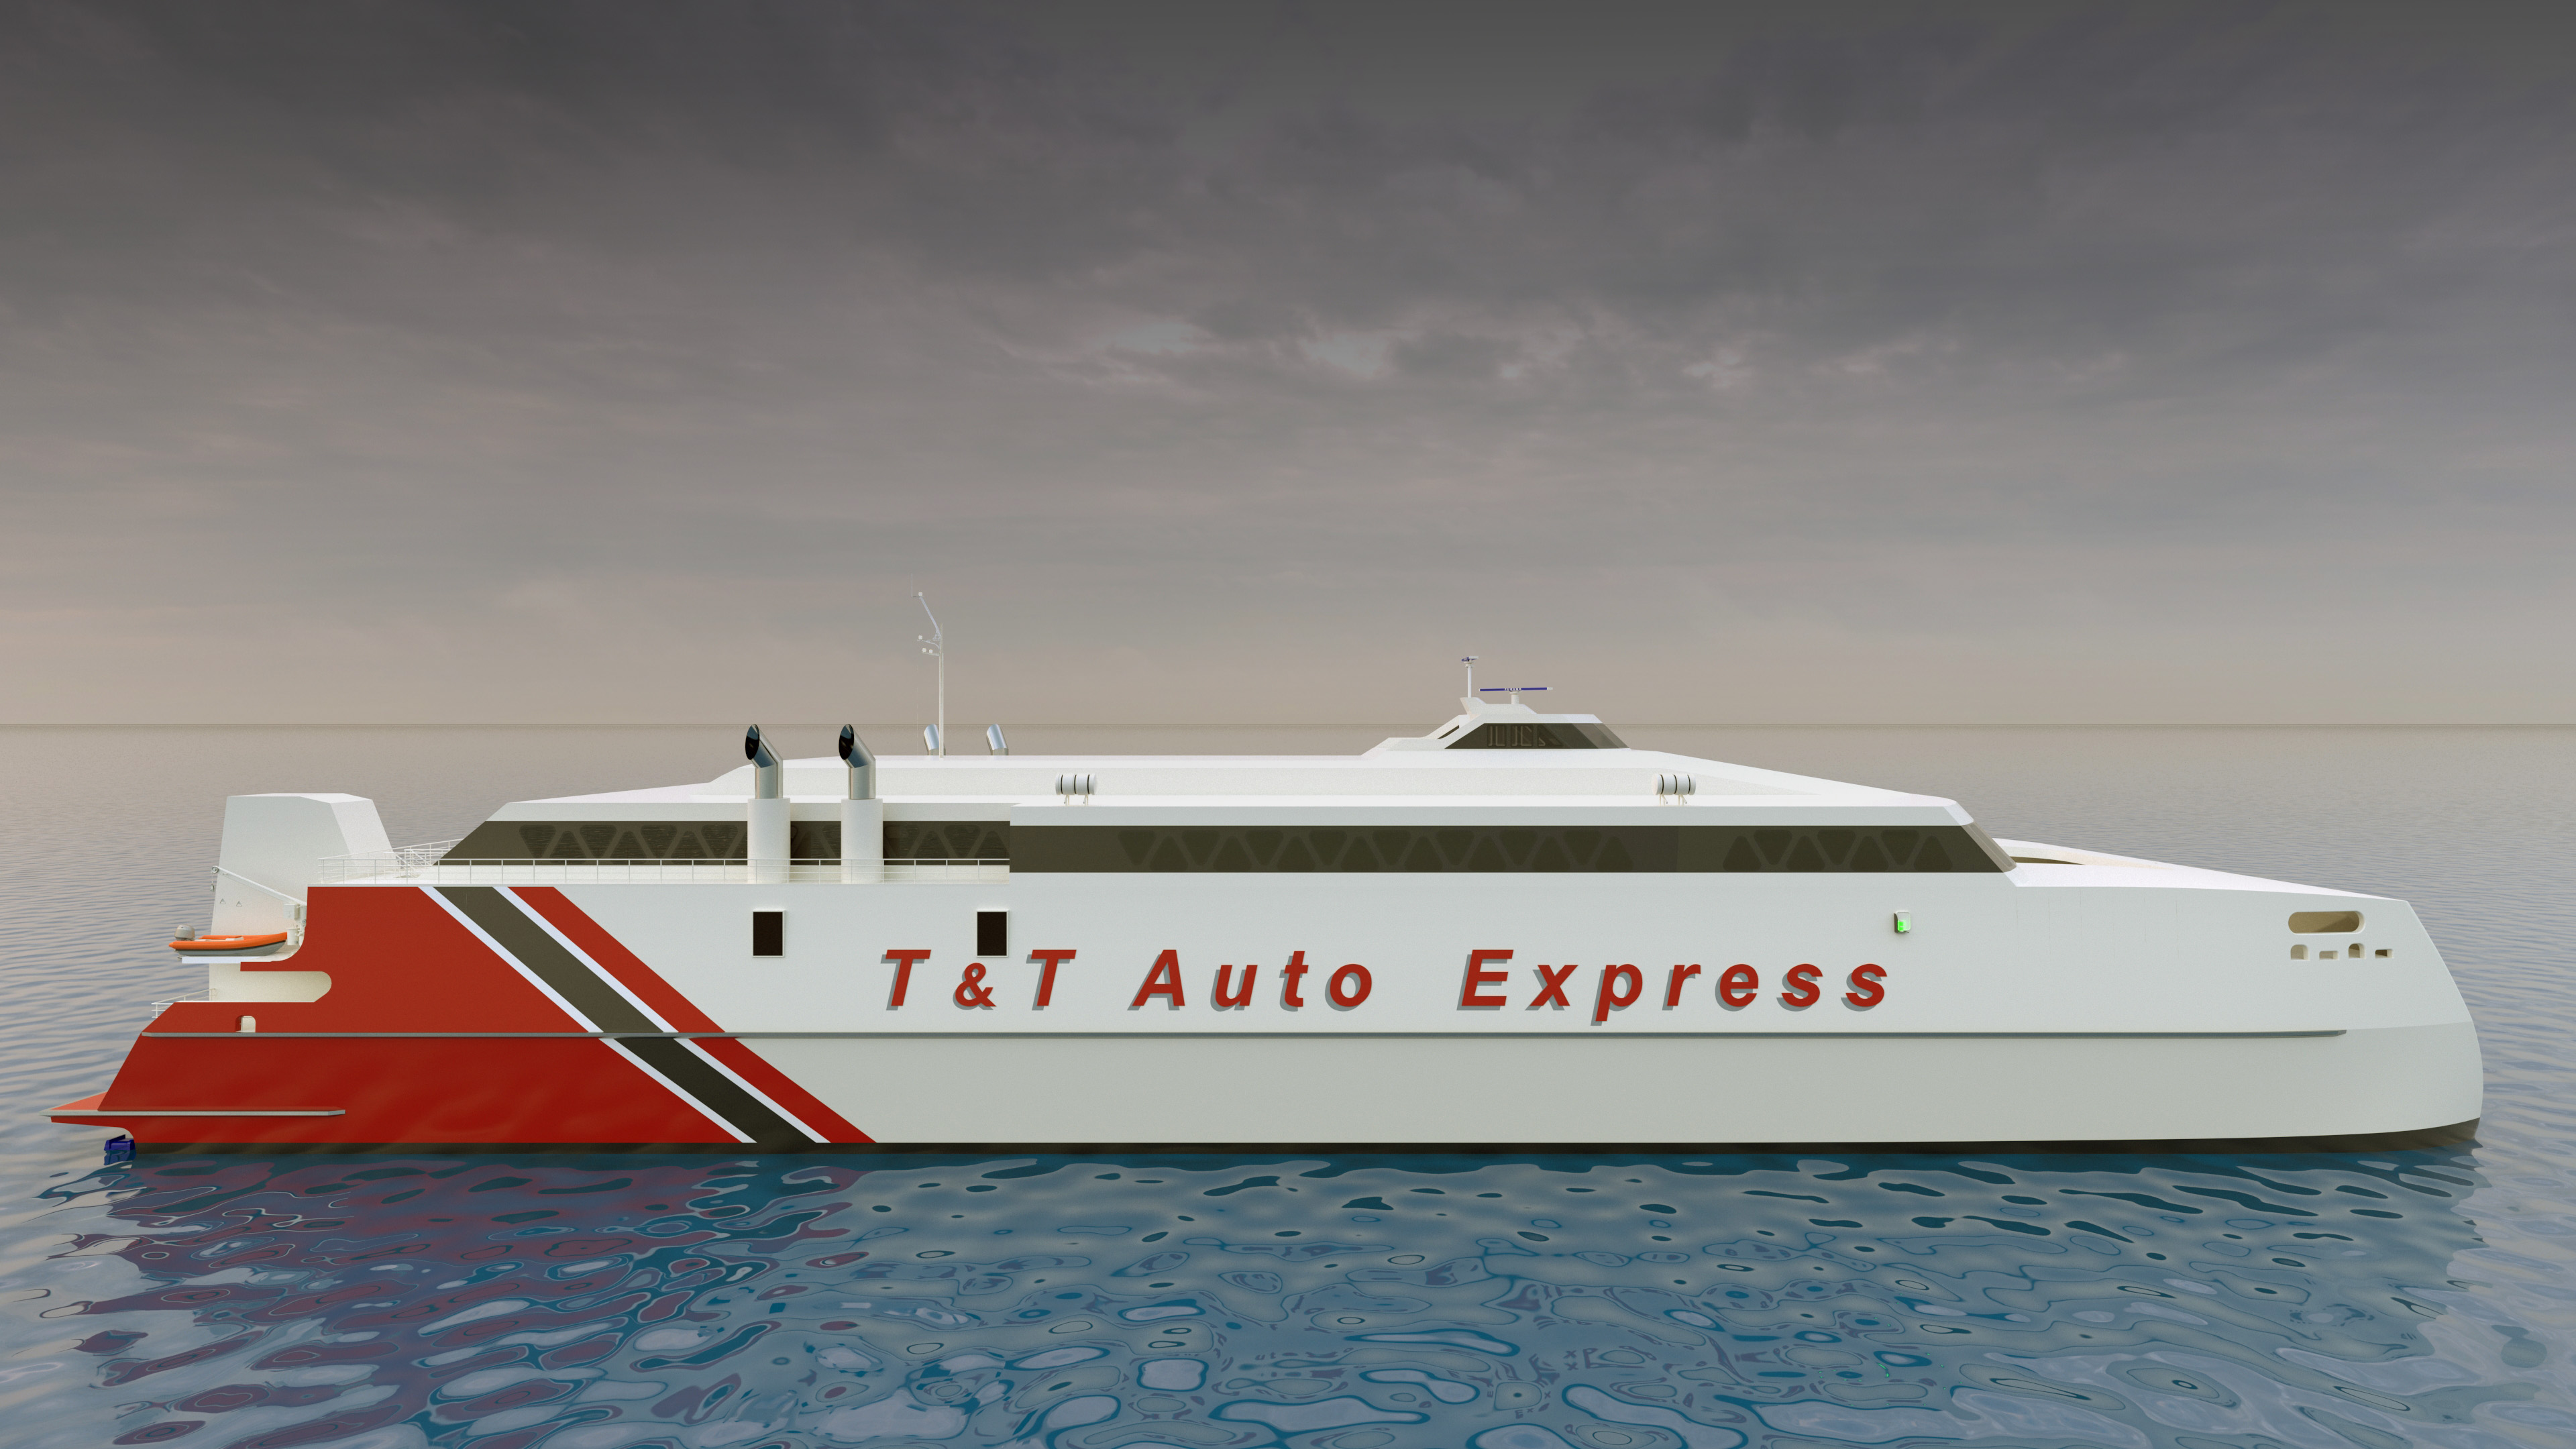 Austal Auto Express 94m T&T.jpg